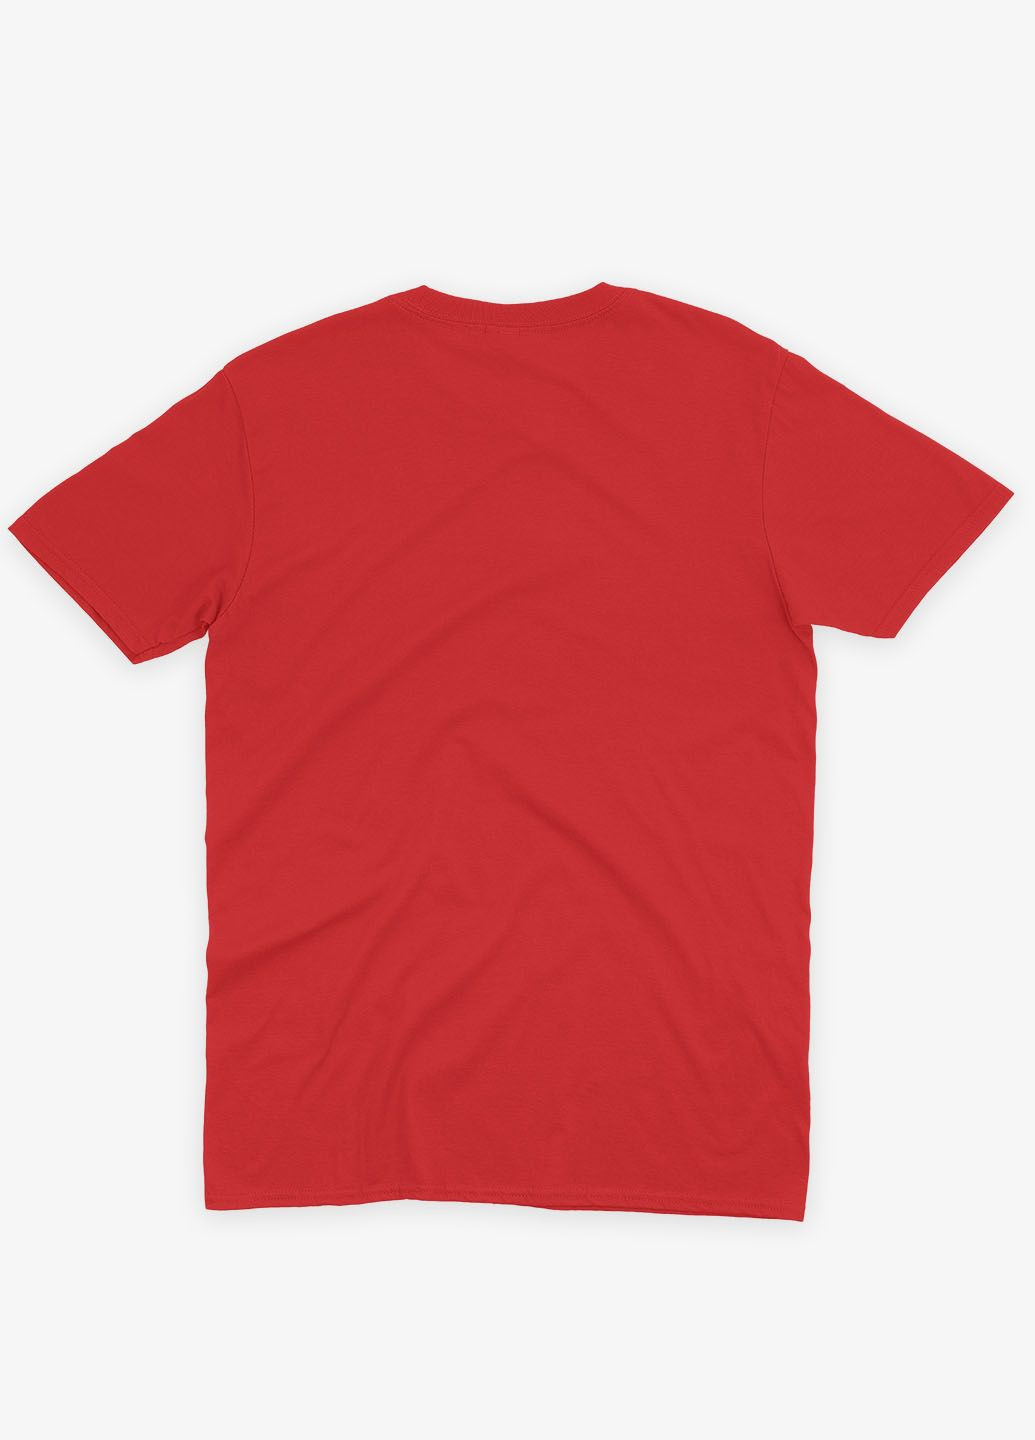 Красная демисезонная футболка для девочки с принтом супервора - веном (ts001-1-sre-006-013-009-g) Modno